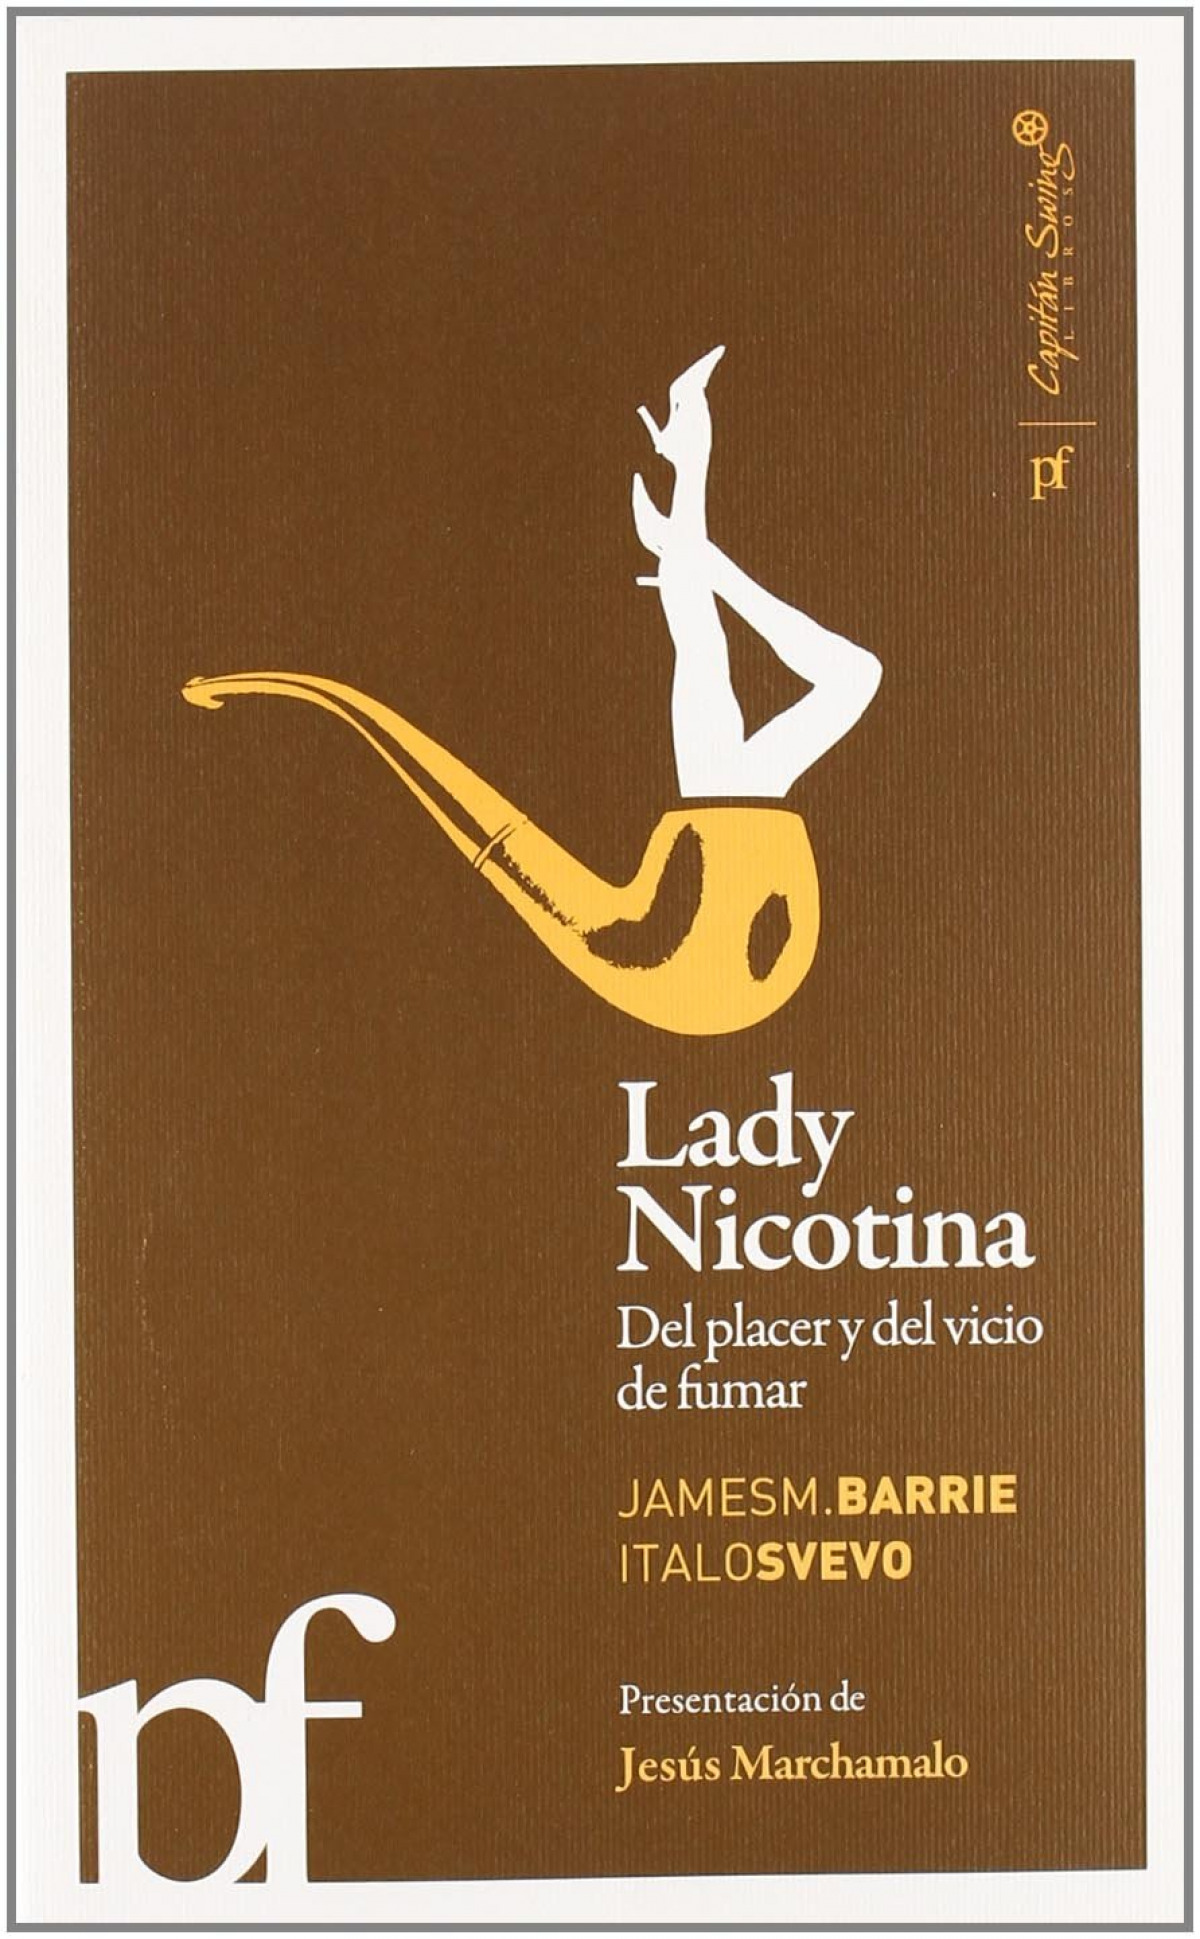 Lady nicotina. Del placer y del vicio de fumar - Barrie, James M. / Svevo, Italo